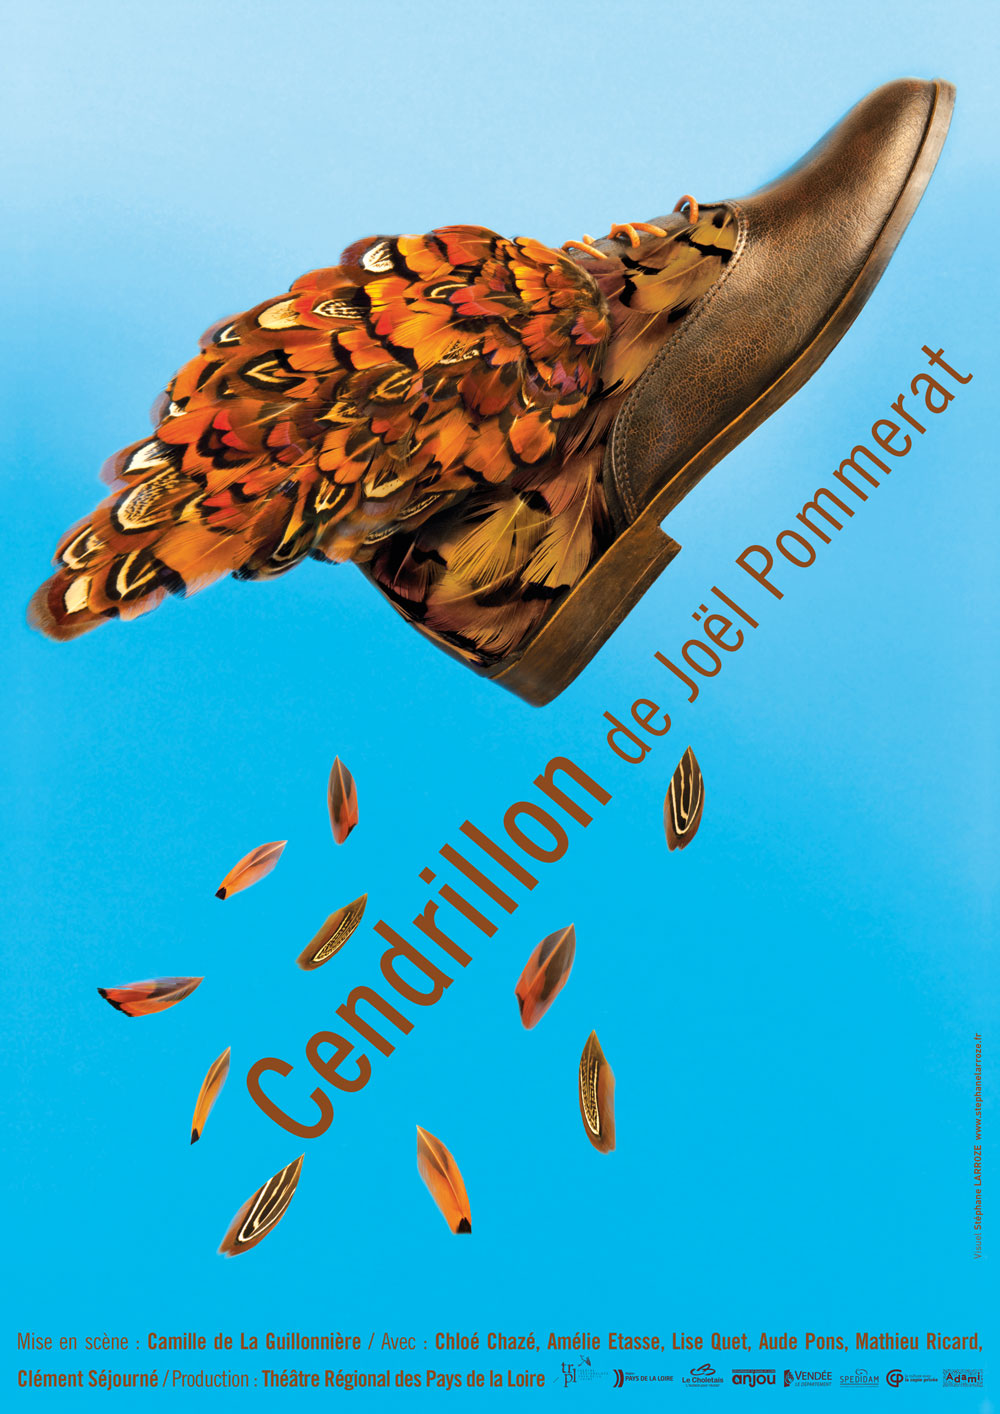 Cendrillon by Joël Pommerat